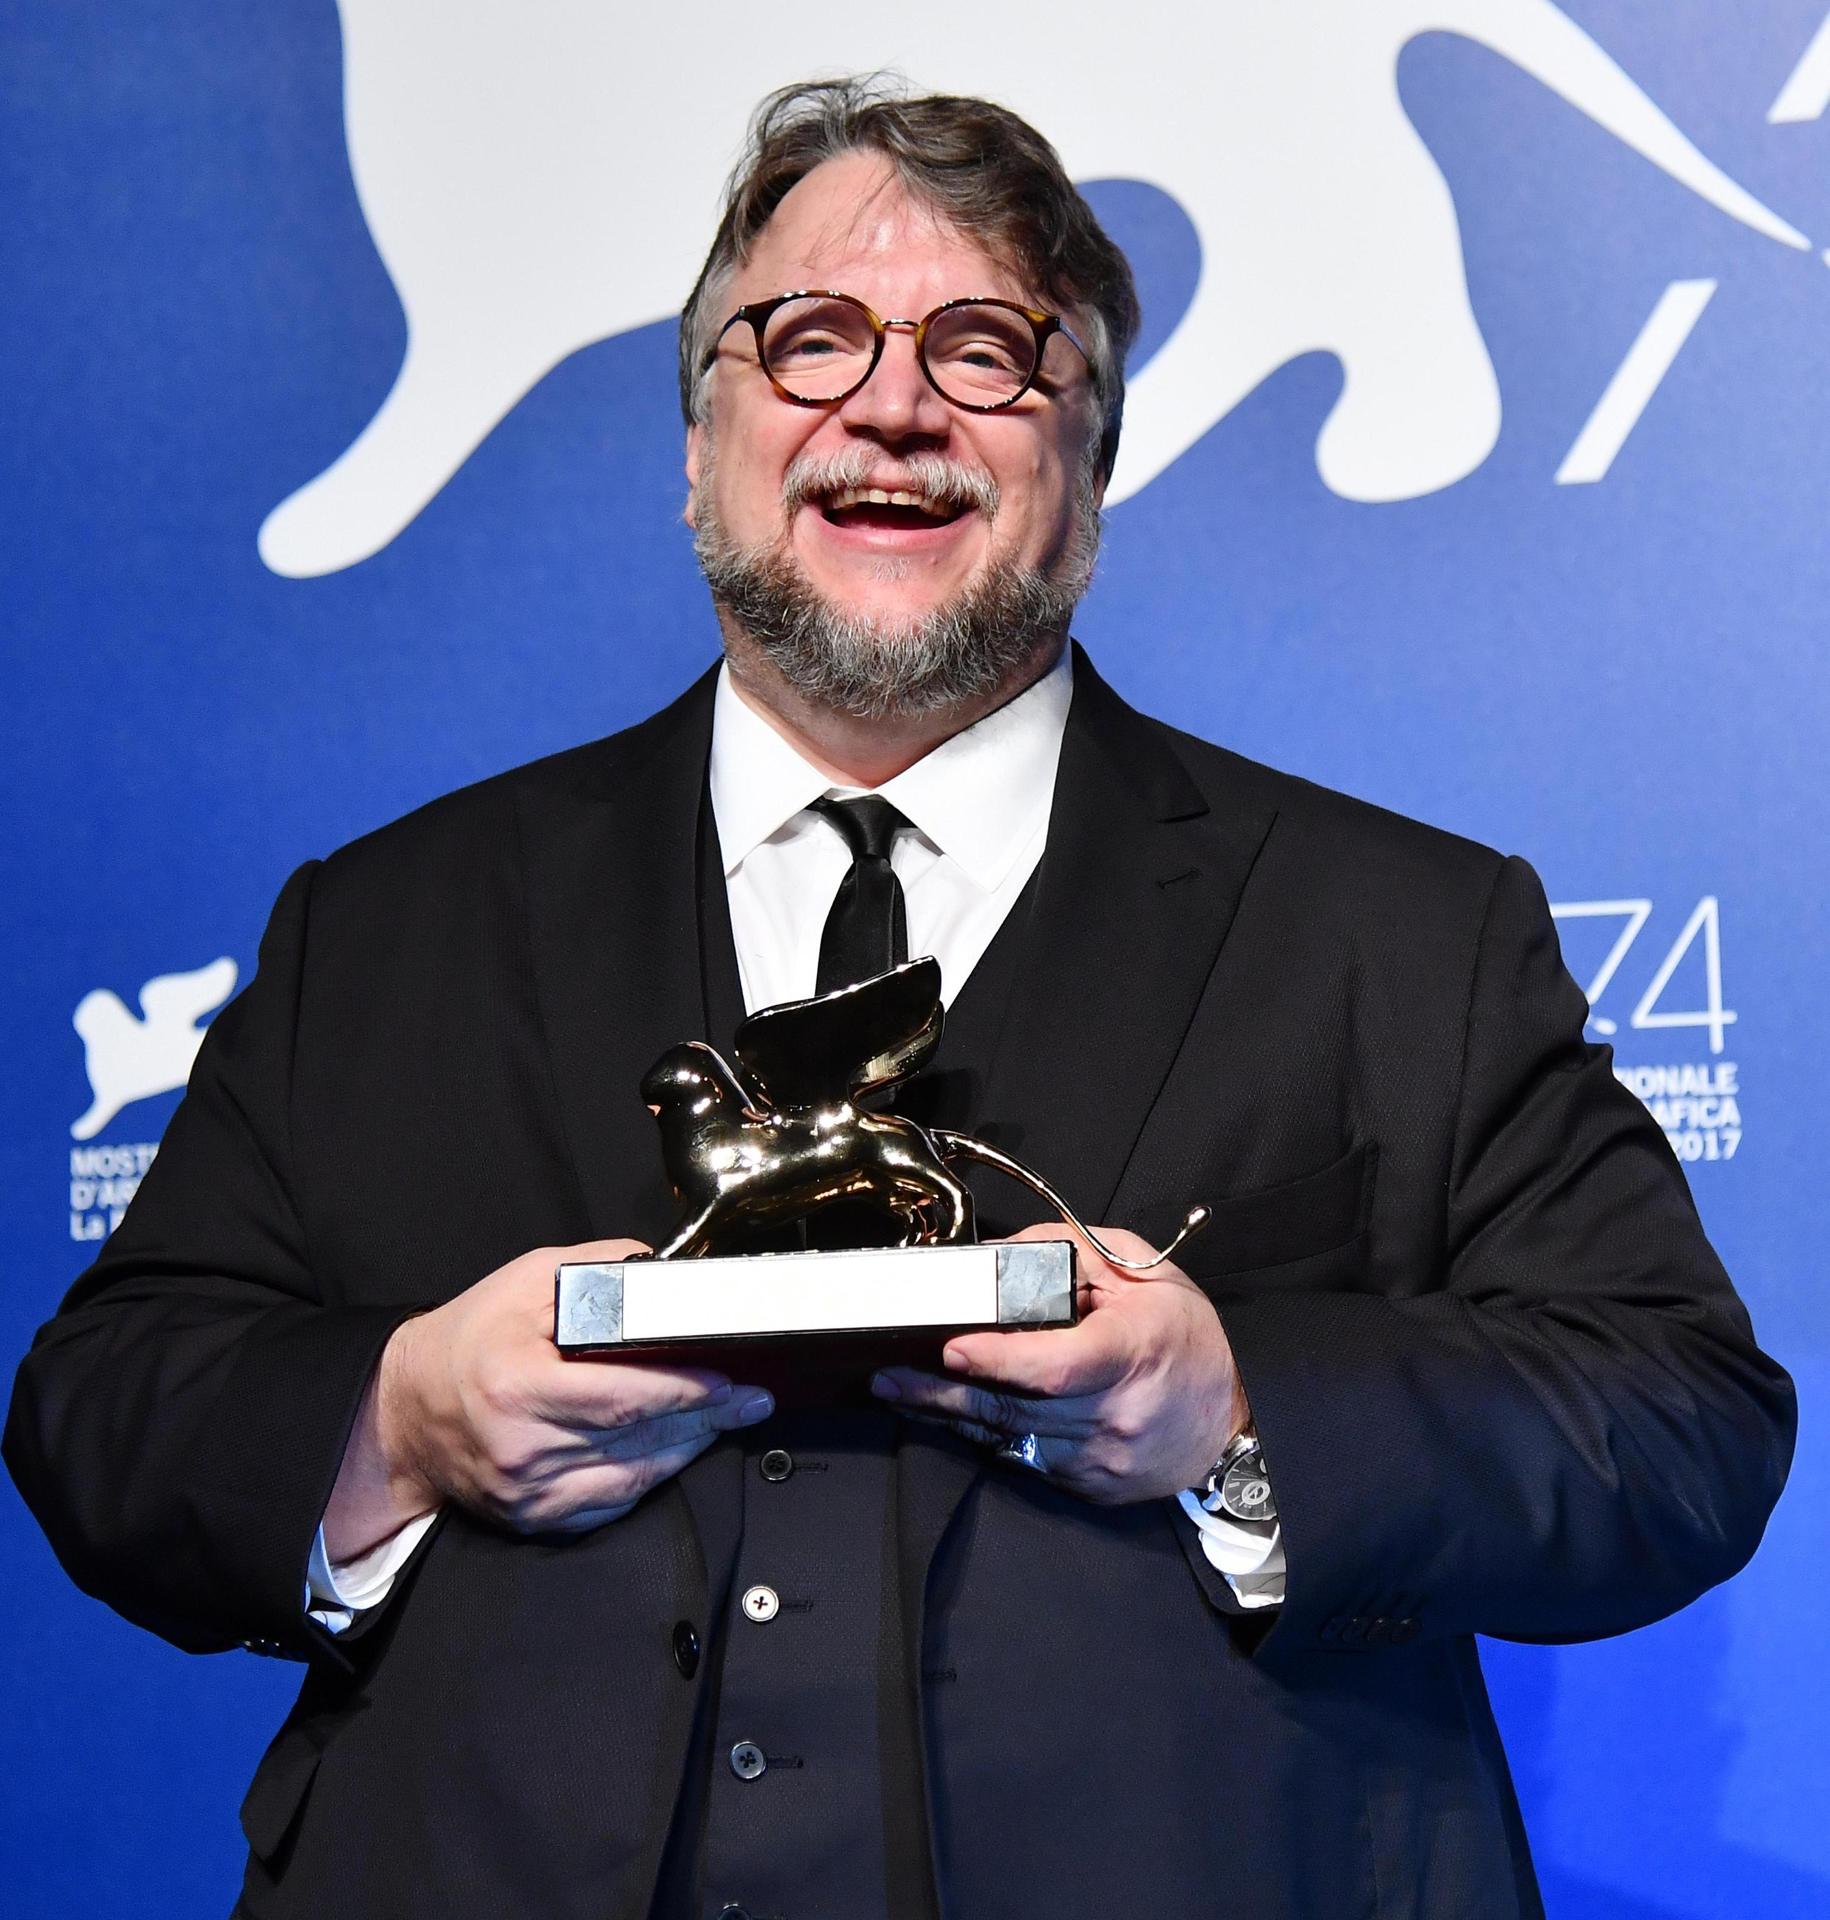 Fotografía de archivo fechada el 9 de septiembre de 2017, que muestra al director de cine Guillermo Del Toro mientras posa con el premio León de Oro por su película 